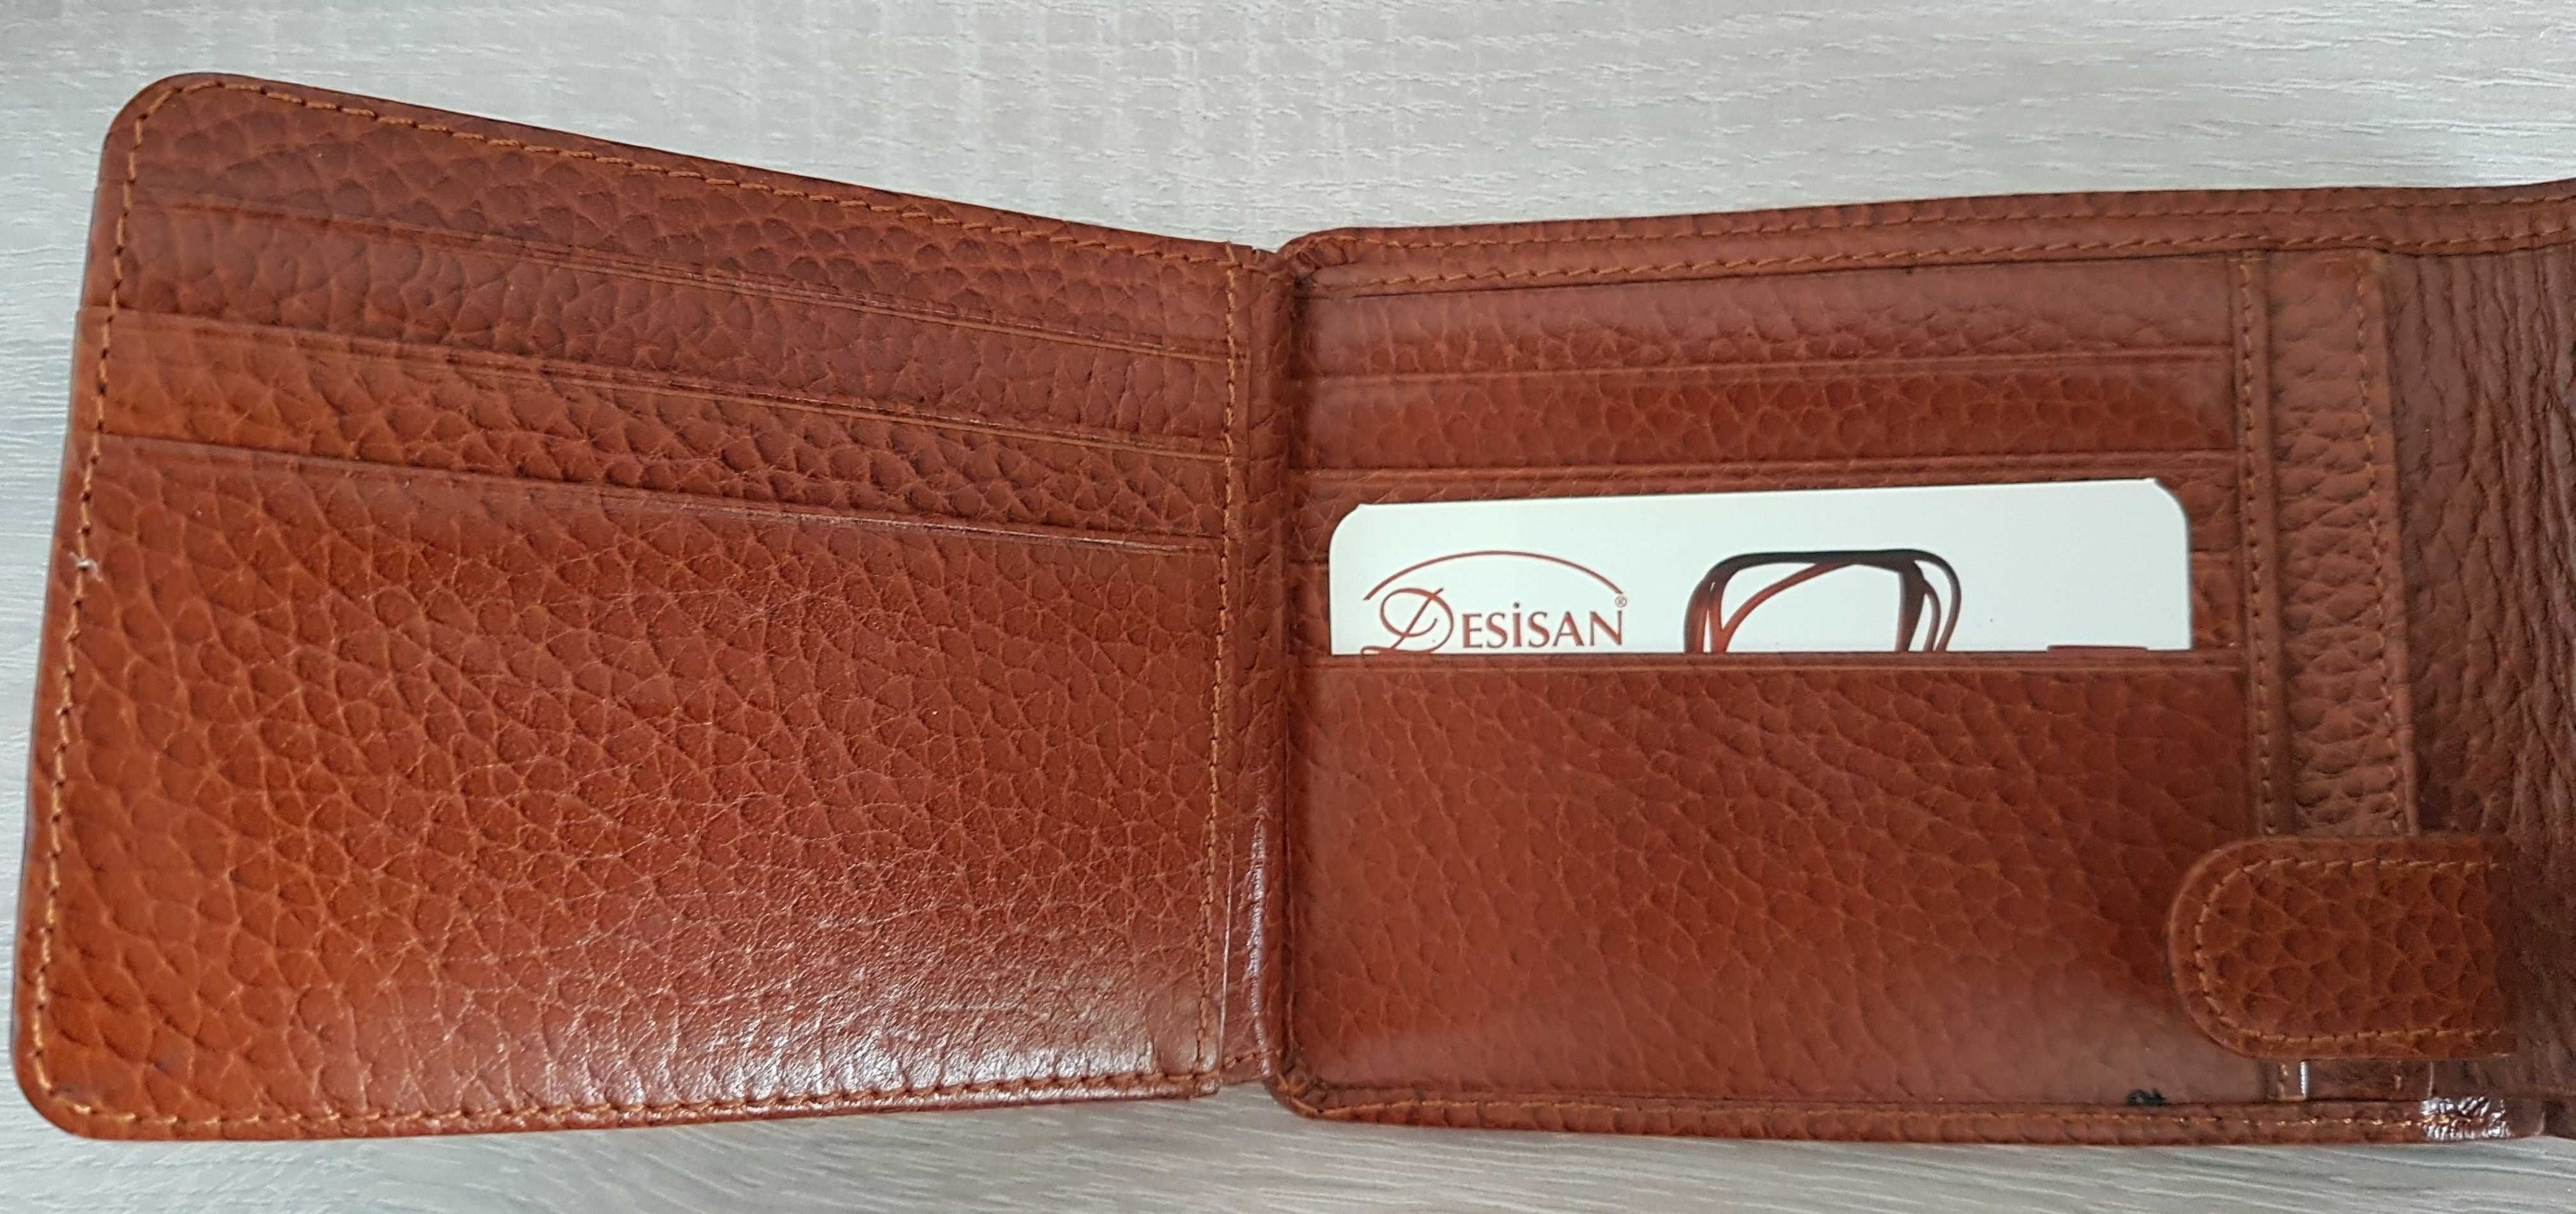 Nowy, skórzany, turecki portfel męski Desisan